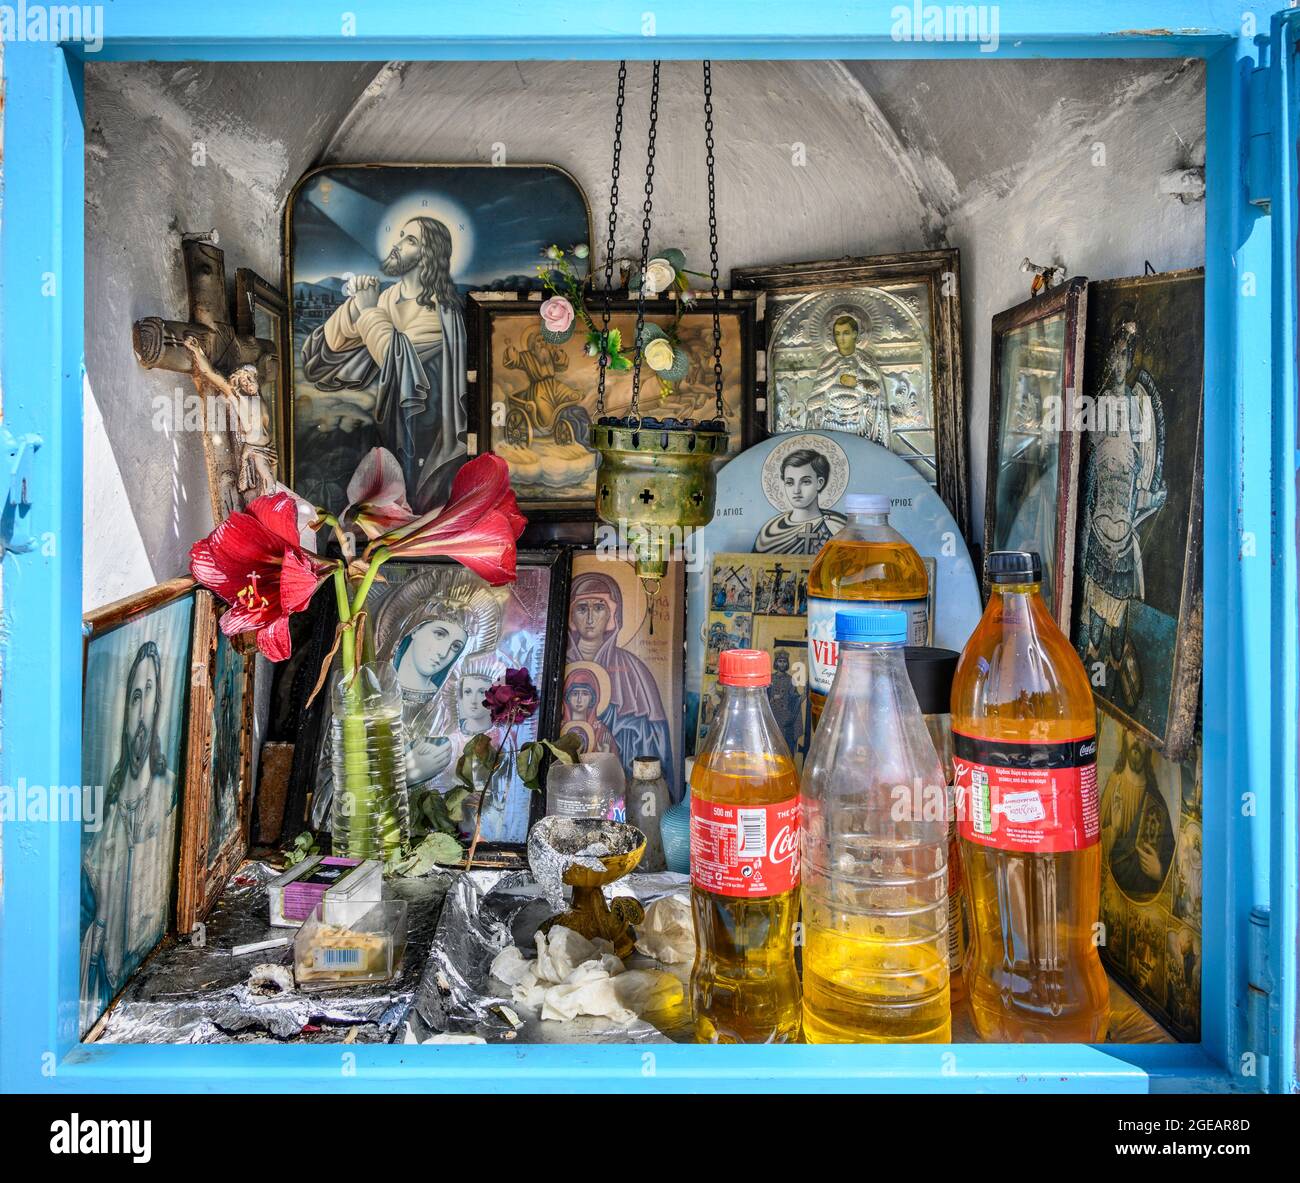 L'intérieur d'un sanctuaire grec orthodoxe en bord de route présentant des icônes religieuses, des bouteilles d'huile sainte et des brûleurs à encens. Arcadia, Péloponnèse, Grèce Banque D'Images